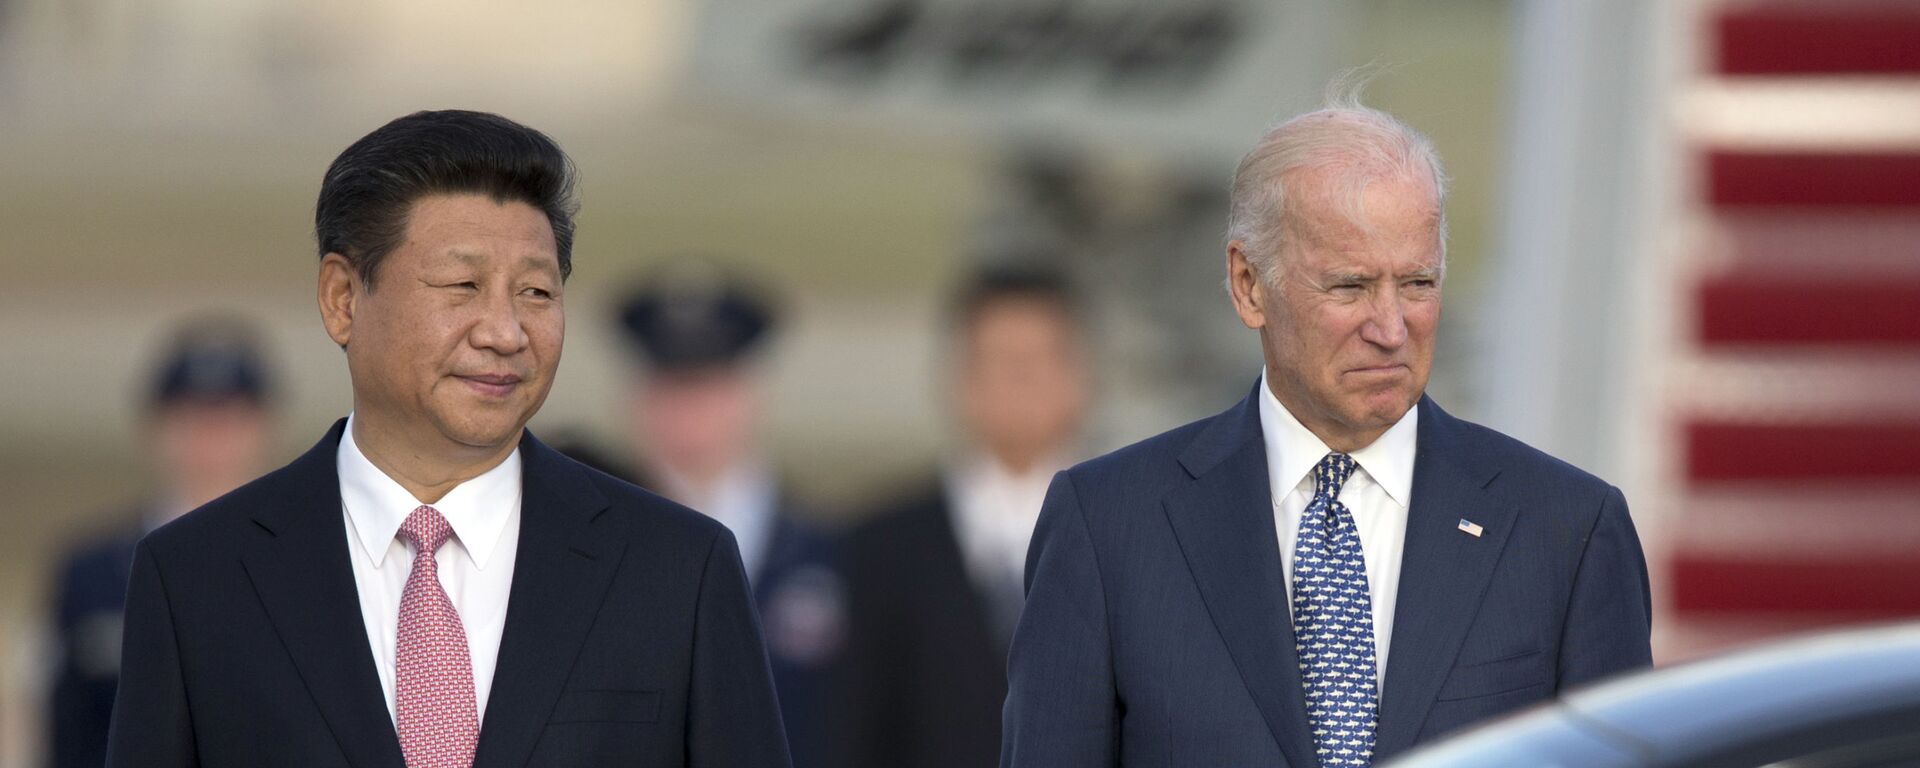 Chủ tịch nước Cộng hòa Nhân dân Trung Hoa Tập Cận Bình và Phó Tổng thống Hoa Kỳ Joe Biden tại Washington, năm 2015. - Sputnik Việt Nam, 1920, 29.05.2021